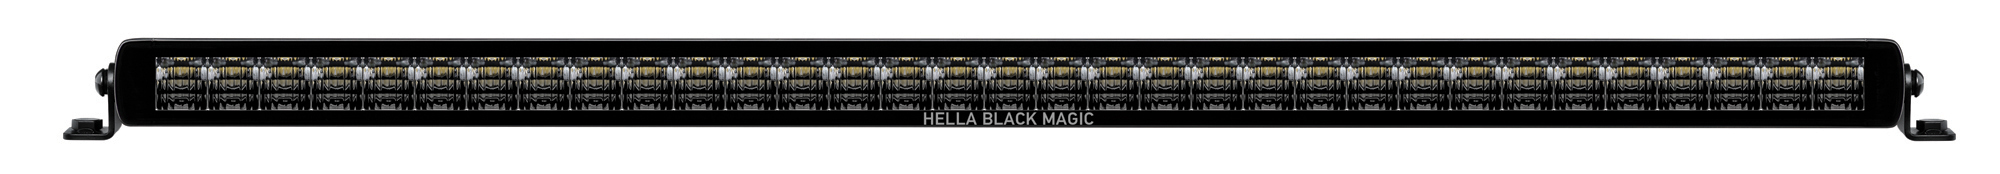 Black Magic LED 32